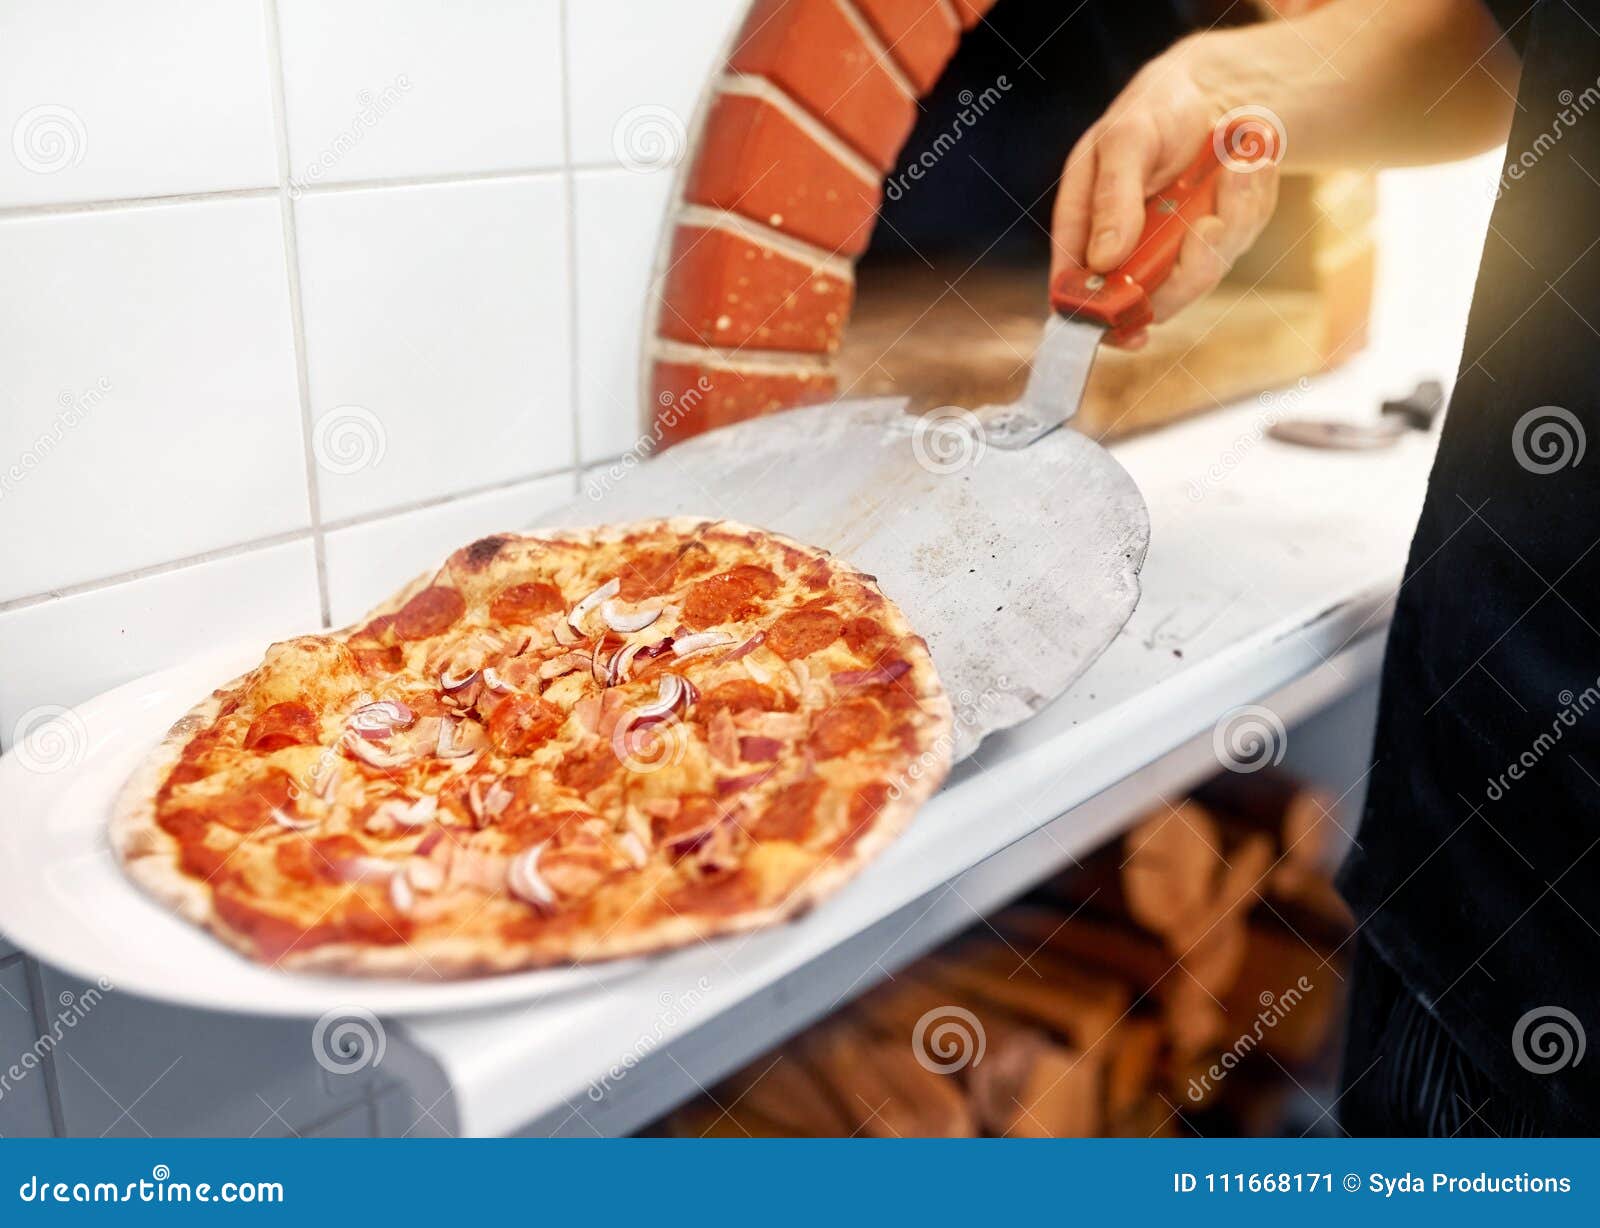 что для пиццы нужно в домашних условиях начинка фото 98